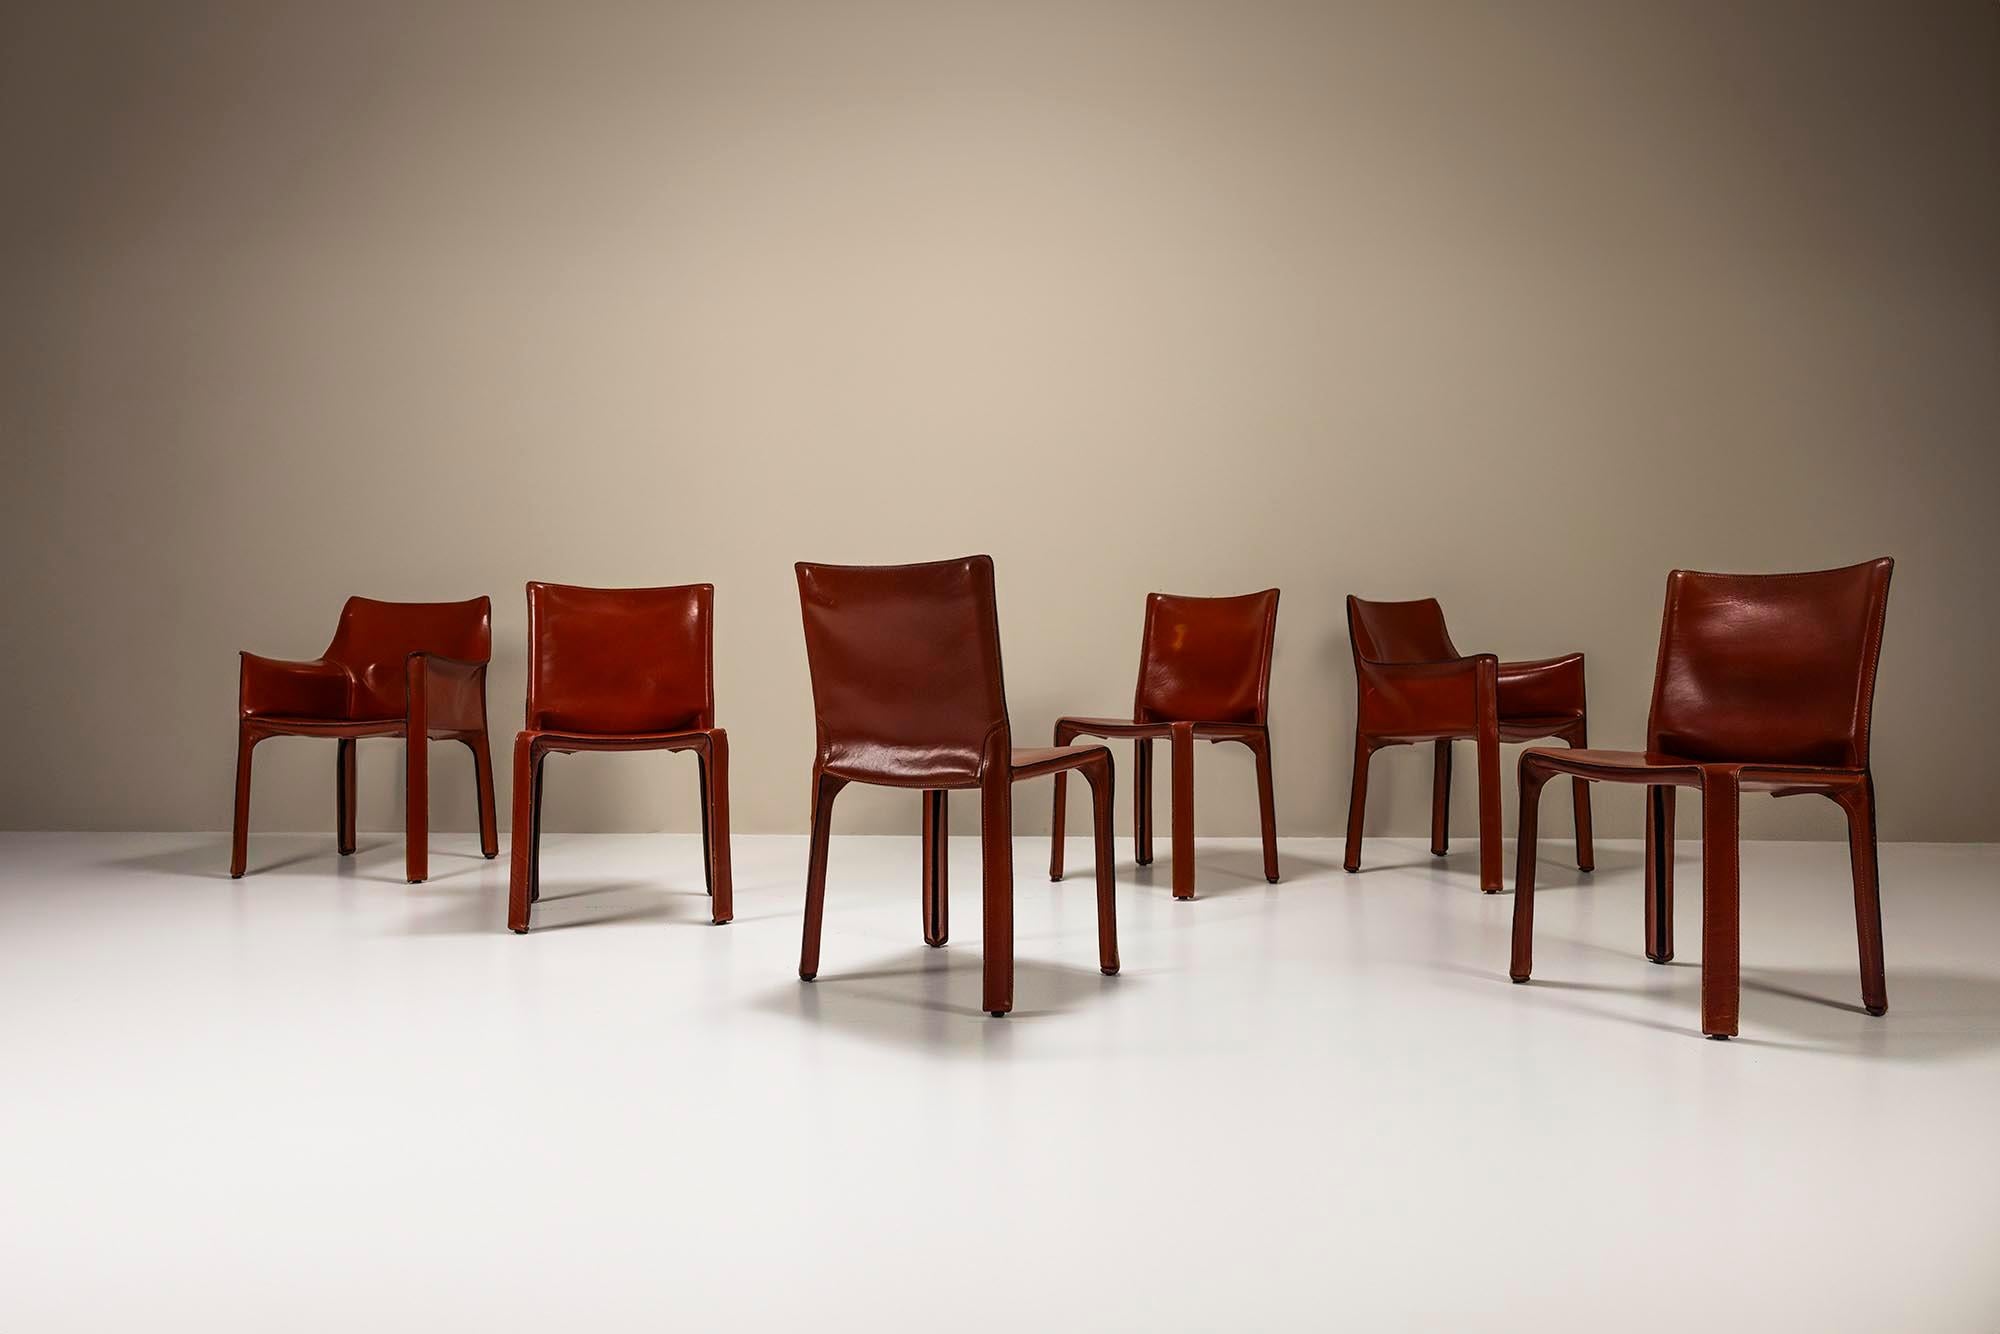 Die CAB-Stühle des italienischen Architekten und Designers Mario Bellini sind vor allem durch ihre Präsenz im MoMa in New York bekannt. Sein Design vermittelt eine Übung in Einfachheit, Handwerkskunst und Schönheit. Dieses Set besteht aus vier